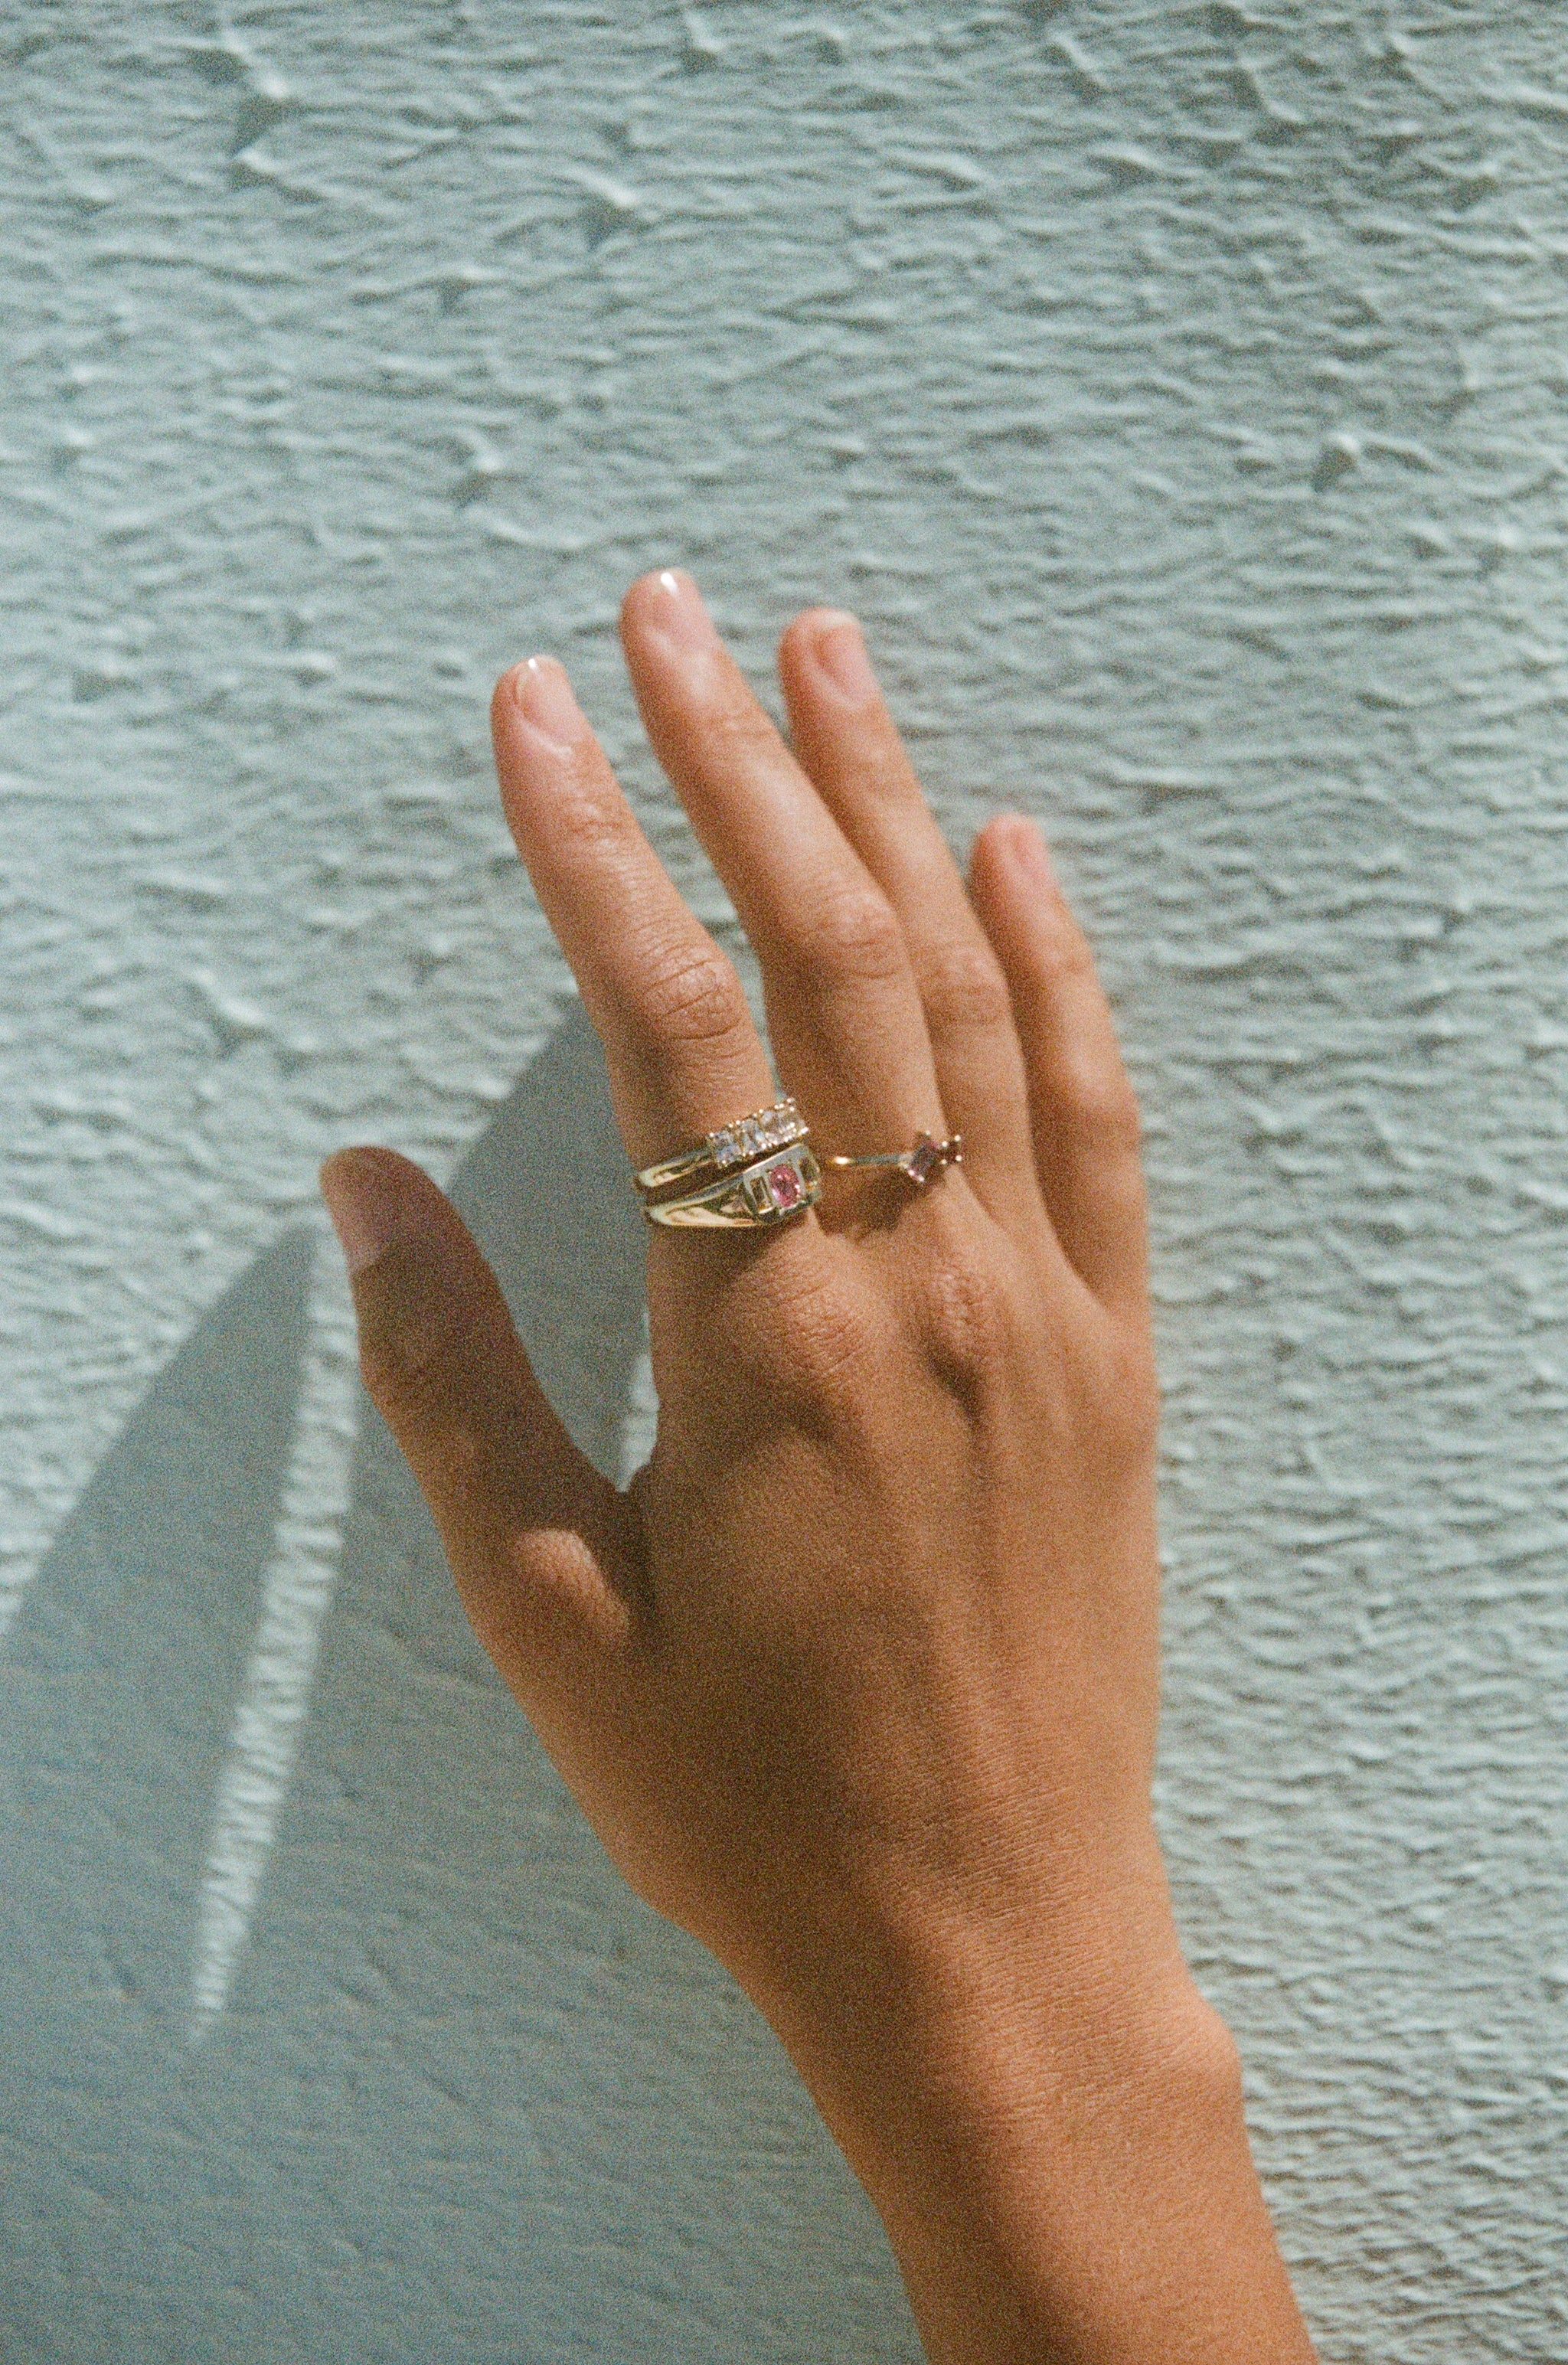 Memento Signet Ring ~ Yellow & Pink